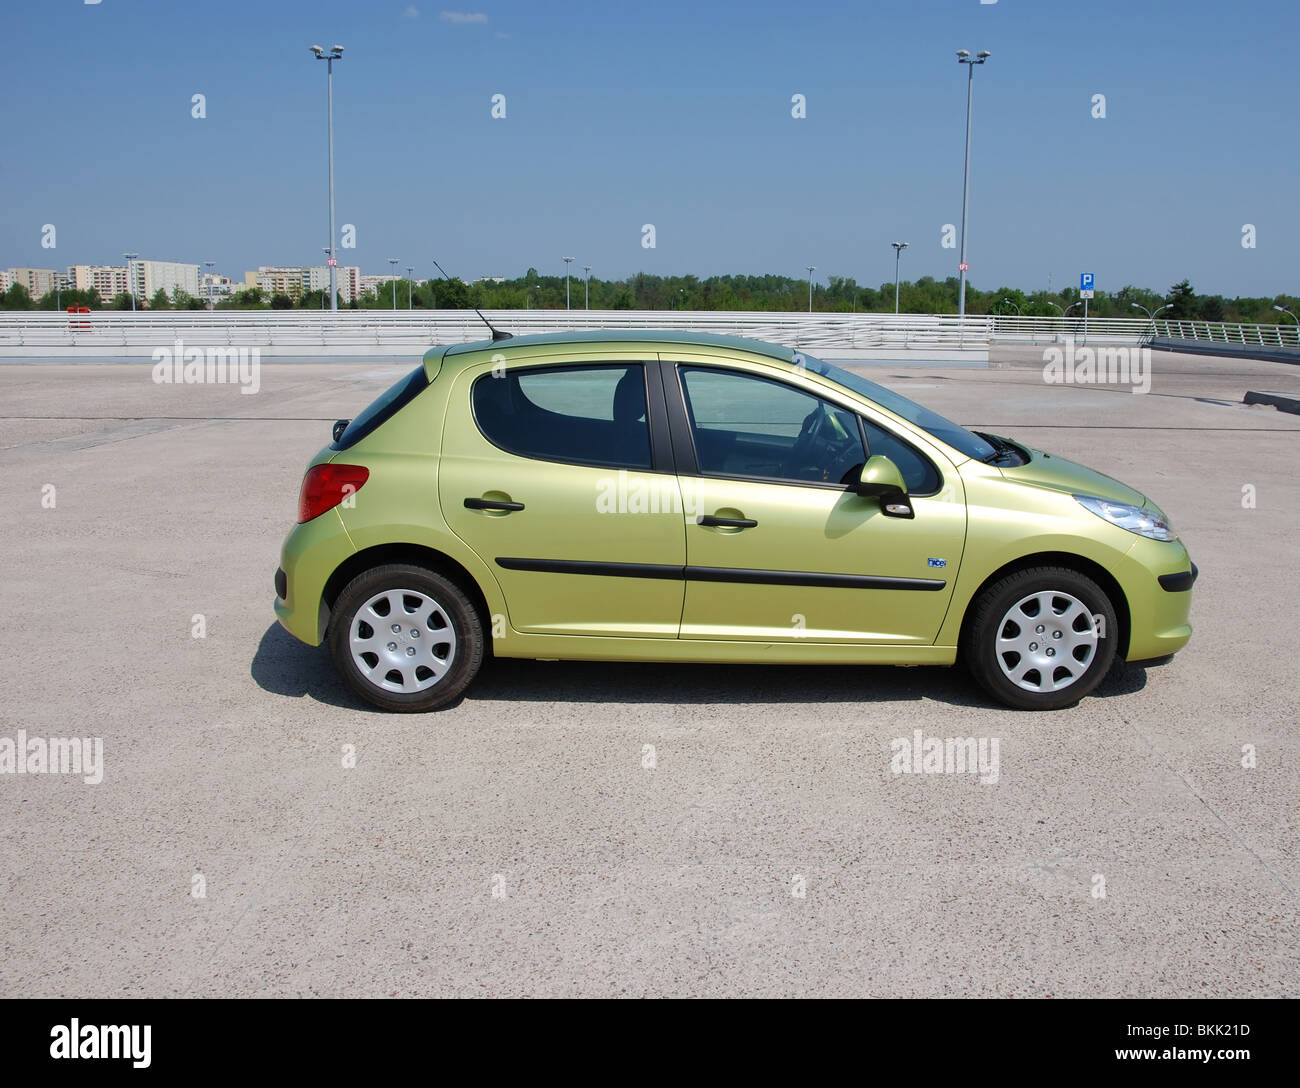 Peugeot 207 : 473 images, photos de stock, objets 3D et images